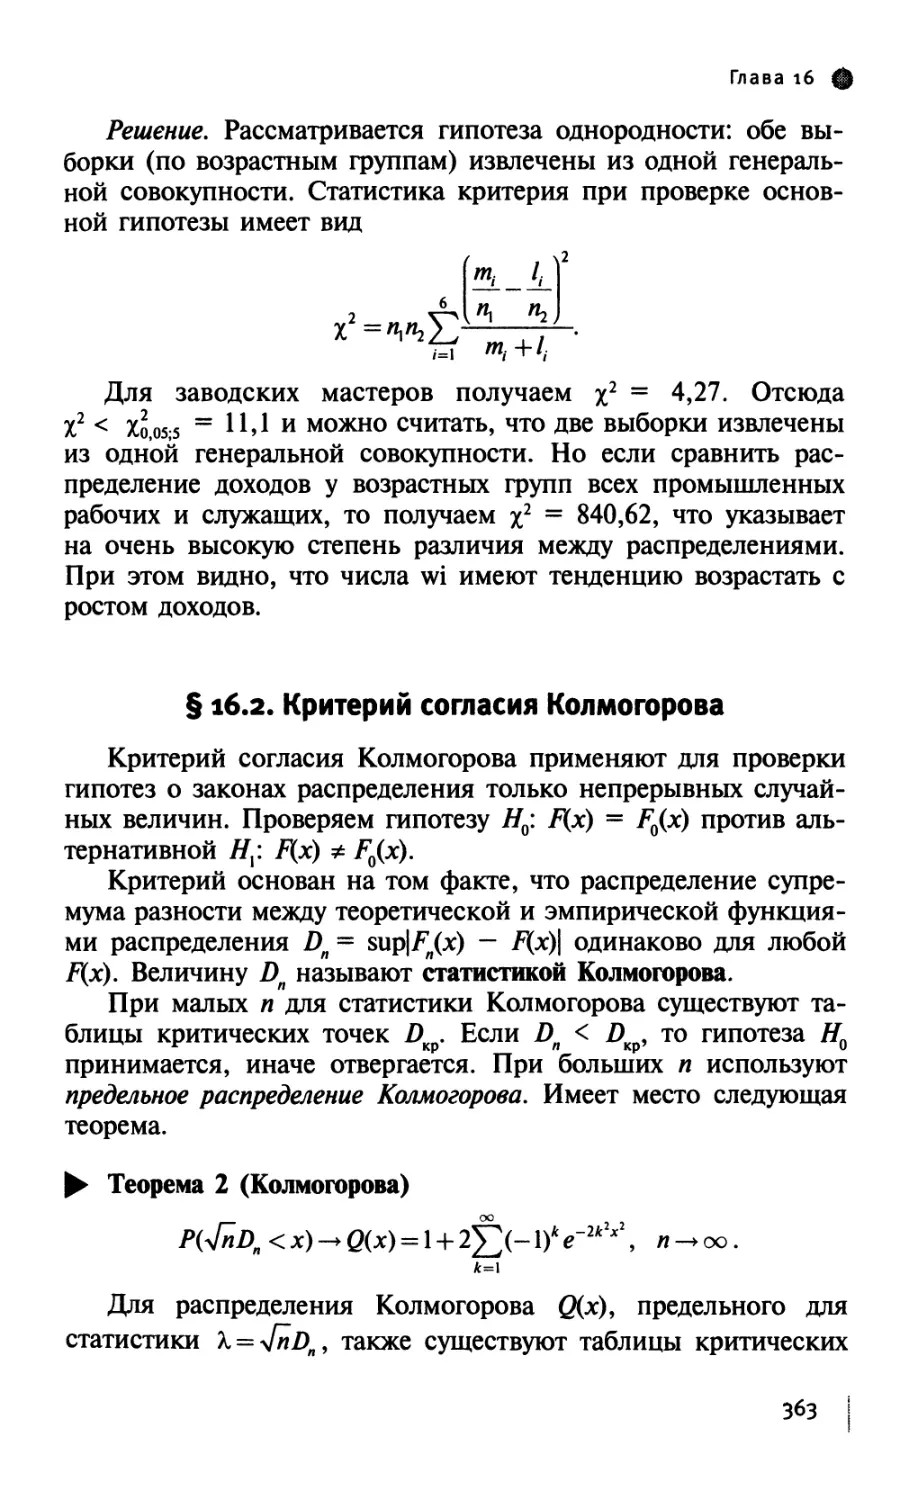 § 16.2. Критерий согласия Колмогорова